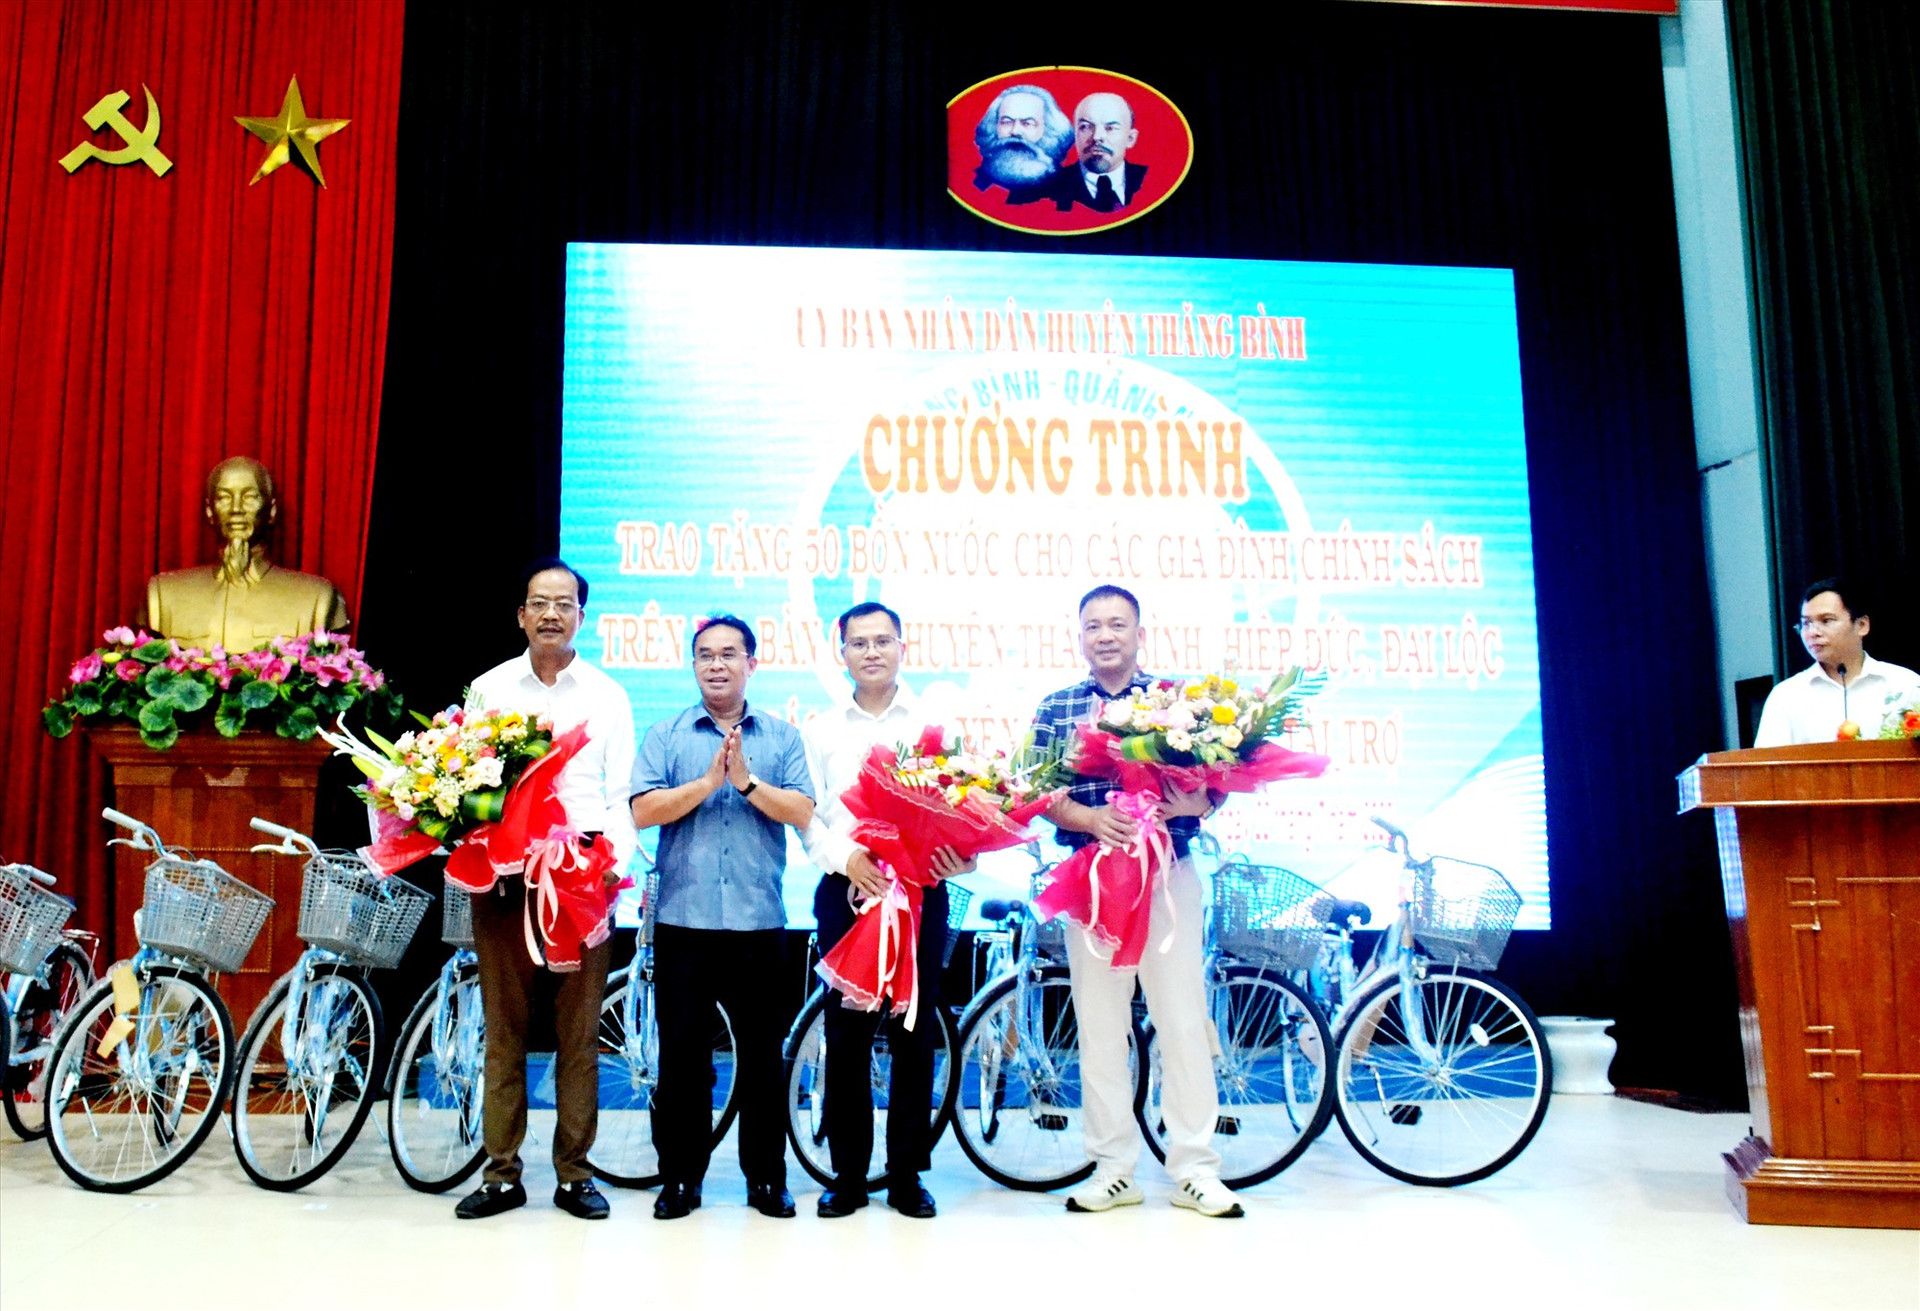 Phó Chủ tịch UBND tỉnh Trần Anh Tuấn tặng hoa các doanh nghiệp thực hiện an sinh xã hội trên địa bàn huyện Thăng Bình. Ảnh: Q.VIỆT